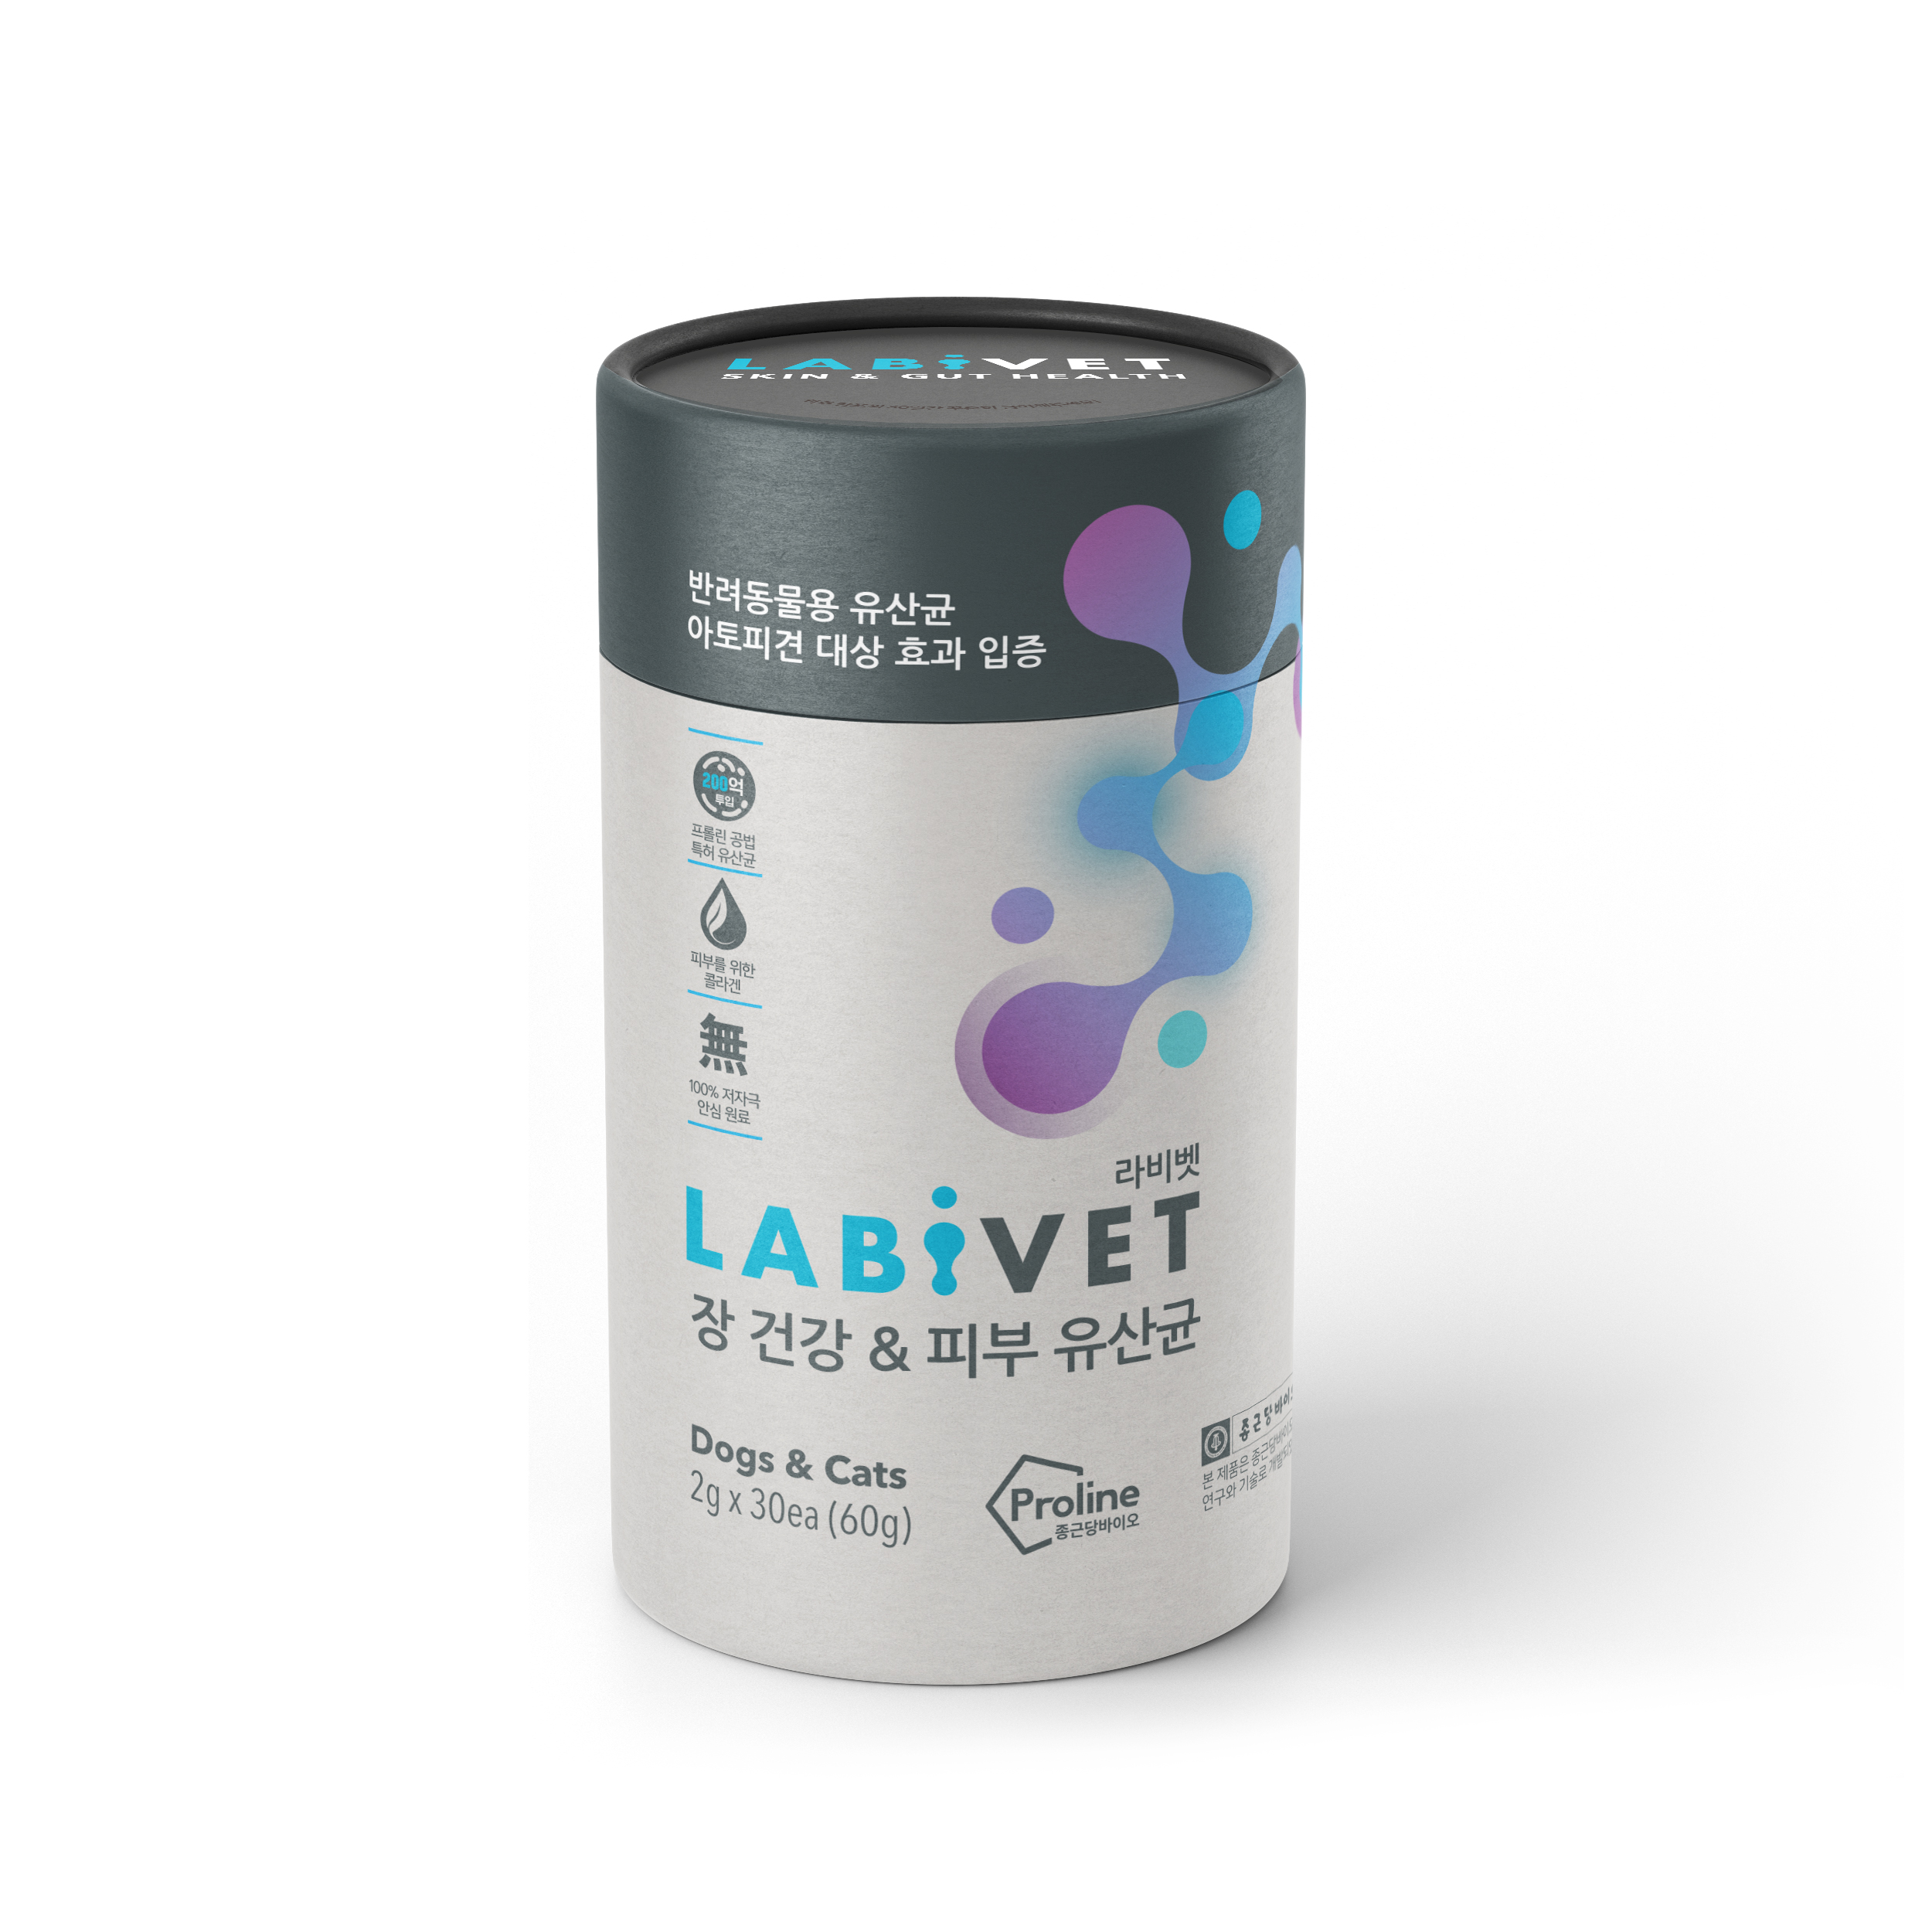 Labivet Probiotics Skin and Gut Health for pets